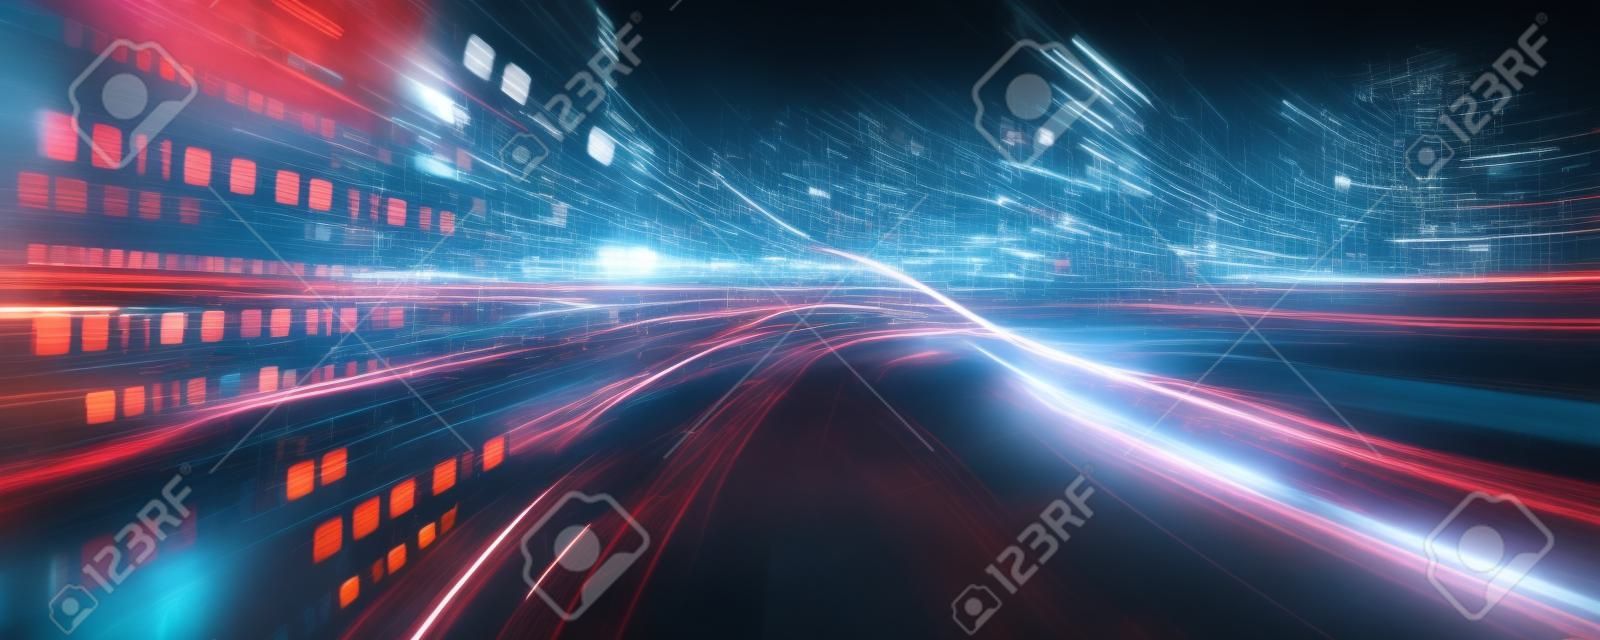 Digitaler Datenfluss auf der Straße mit Bewegungsunschärfe, um eine Vision von schneller Geschwindigkeitsübertragung zu schaffen. Konzept der zukünftigen digitalen Transformation, disruptive Innovation und agile Geschäftsmethodik.